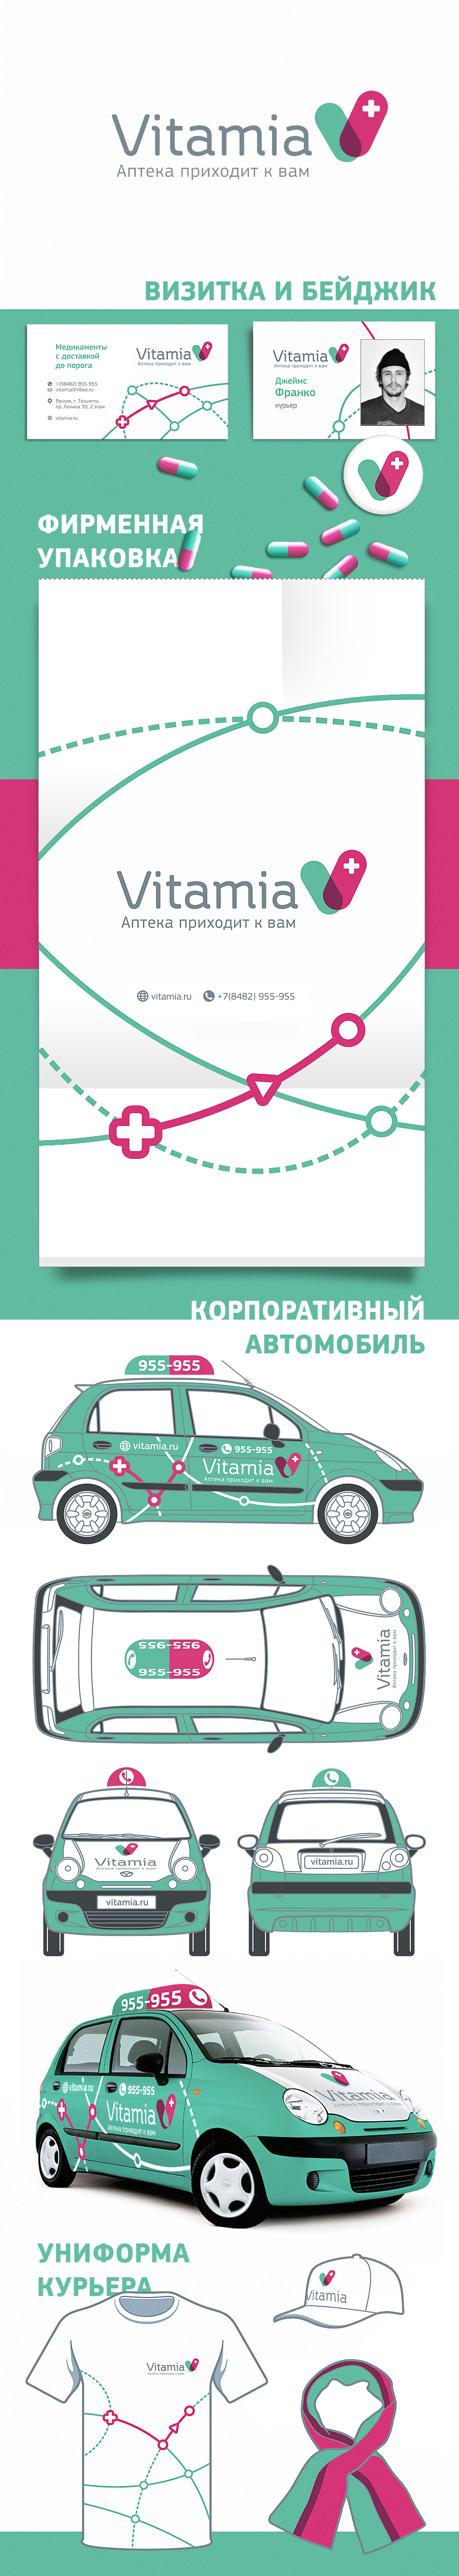 Логотип и стиль аптеки Vitamia